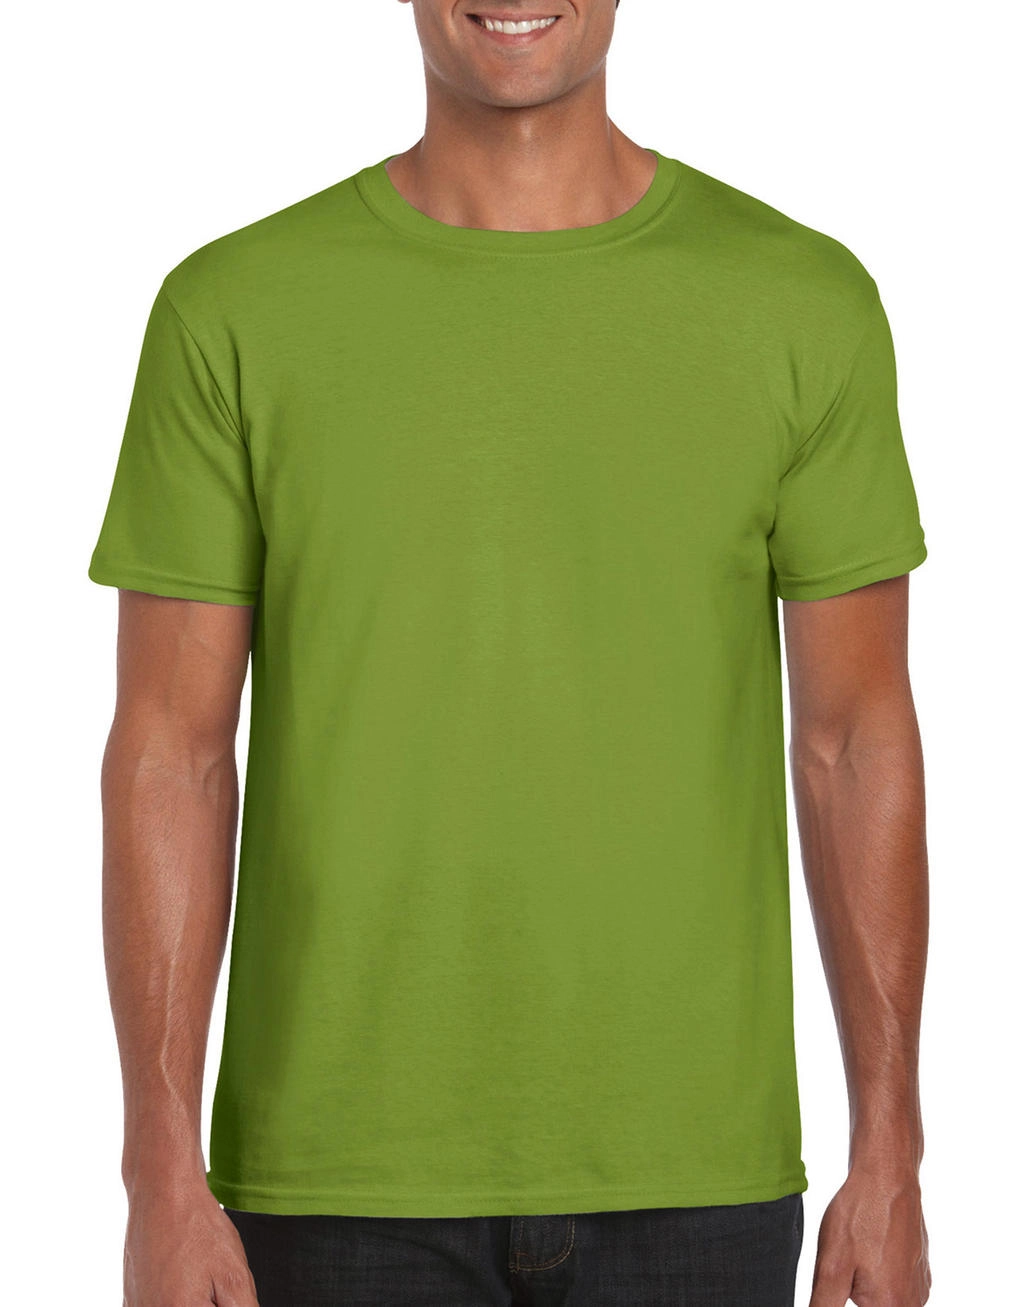 Softstyle® Ring Spun T-Shirt zum Besticken und Bedrucken in der Farbe Kiwi mit Ihren Logo, Schriftzug oder Motiv.